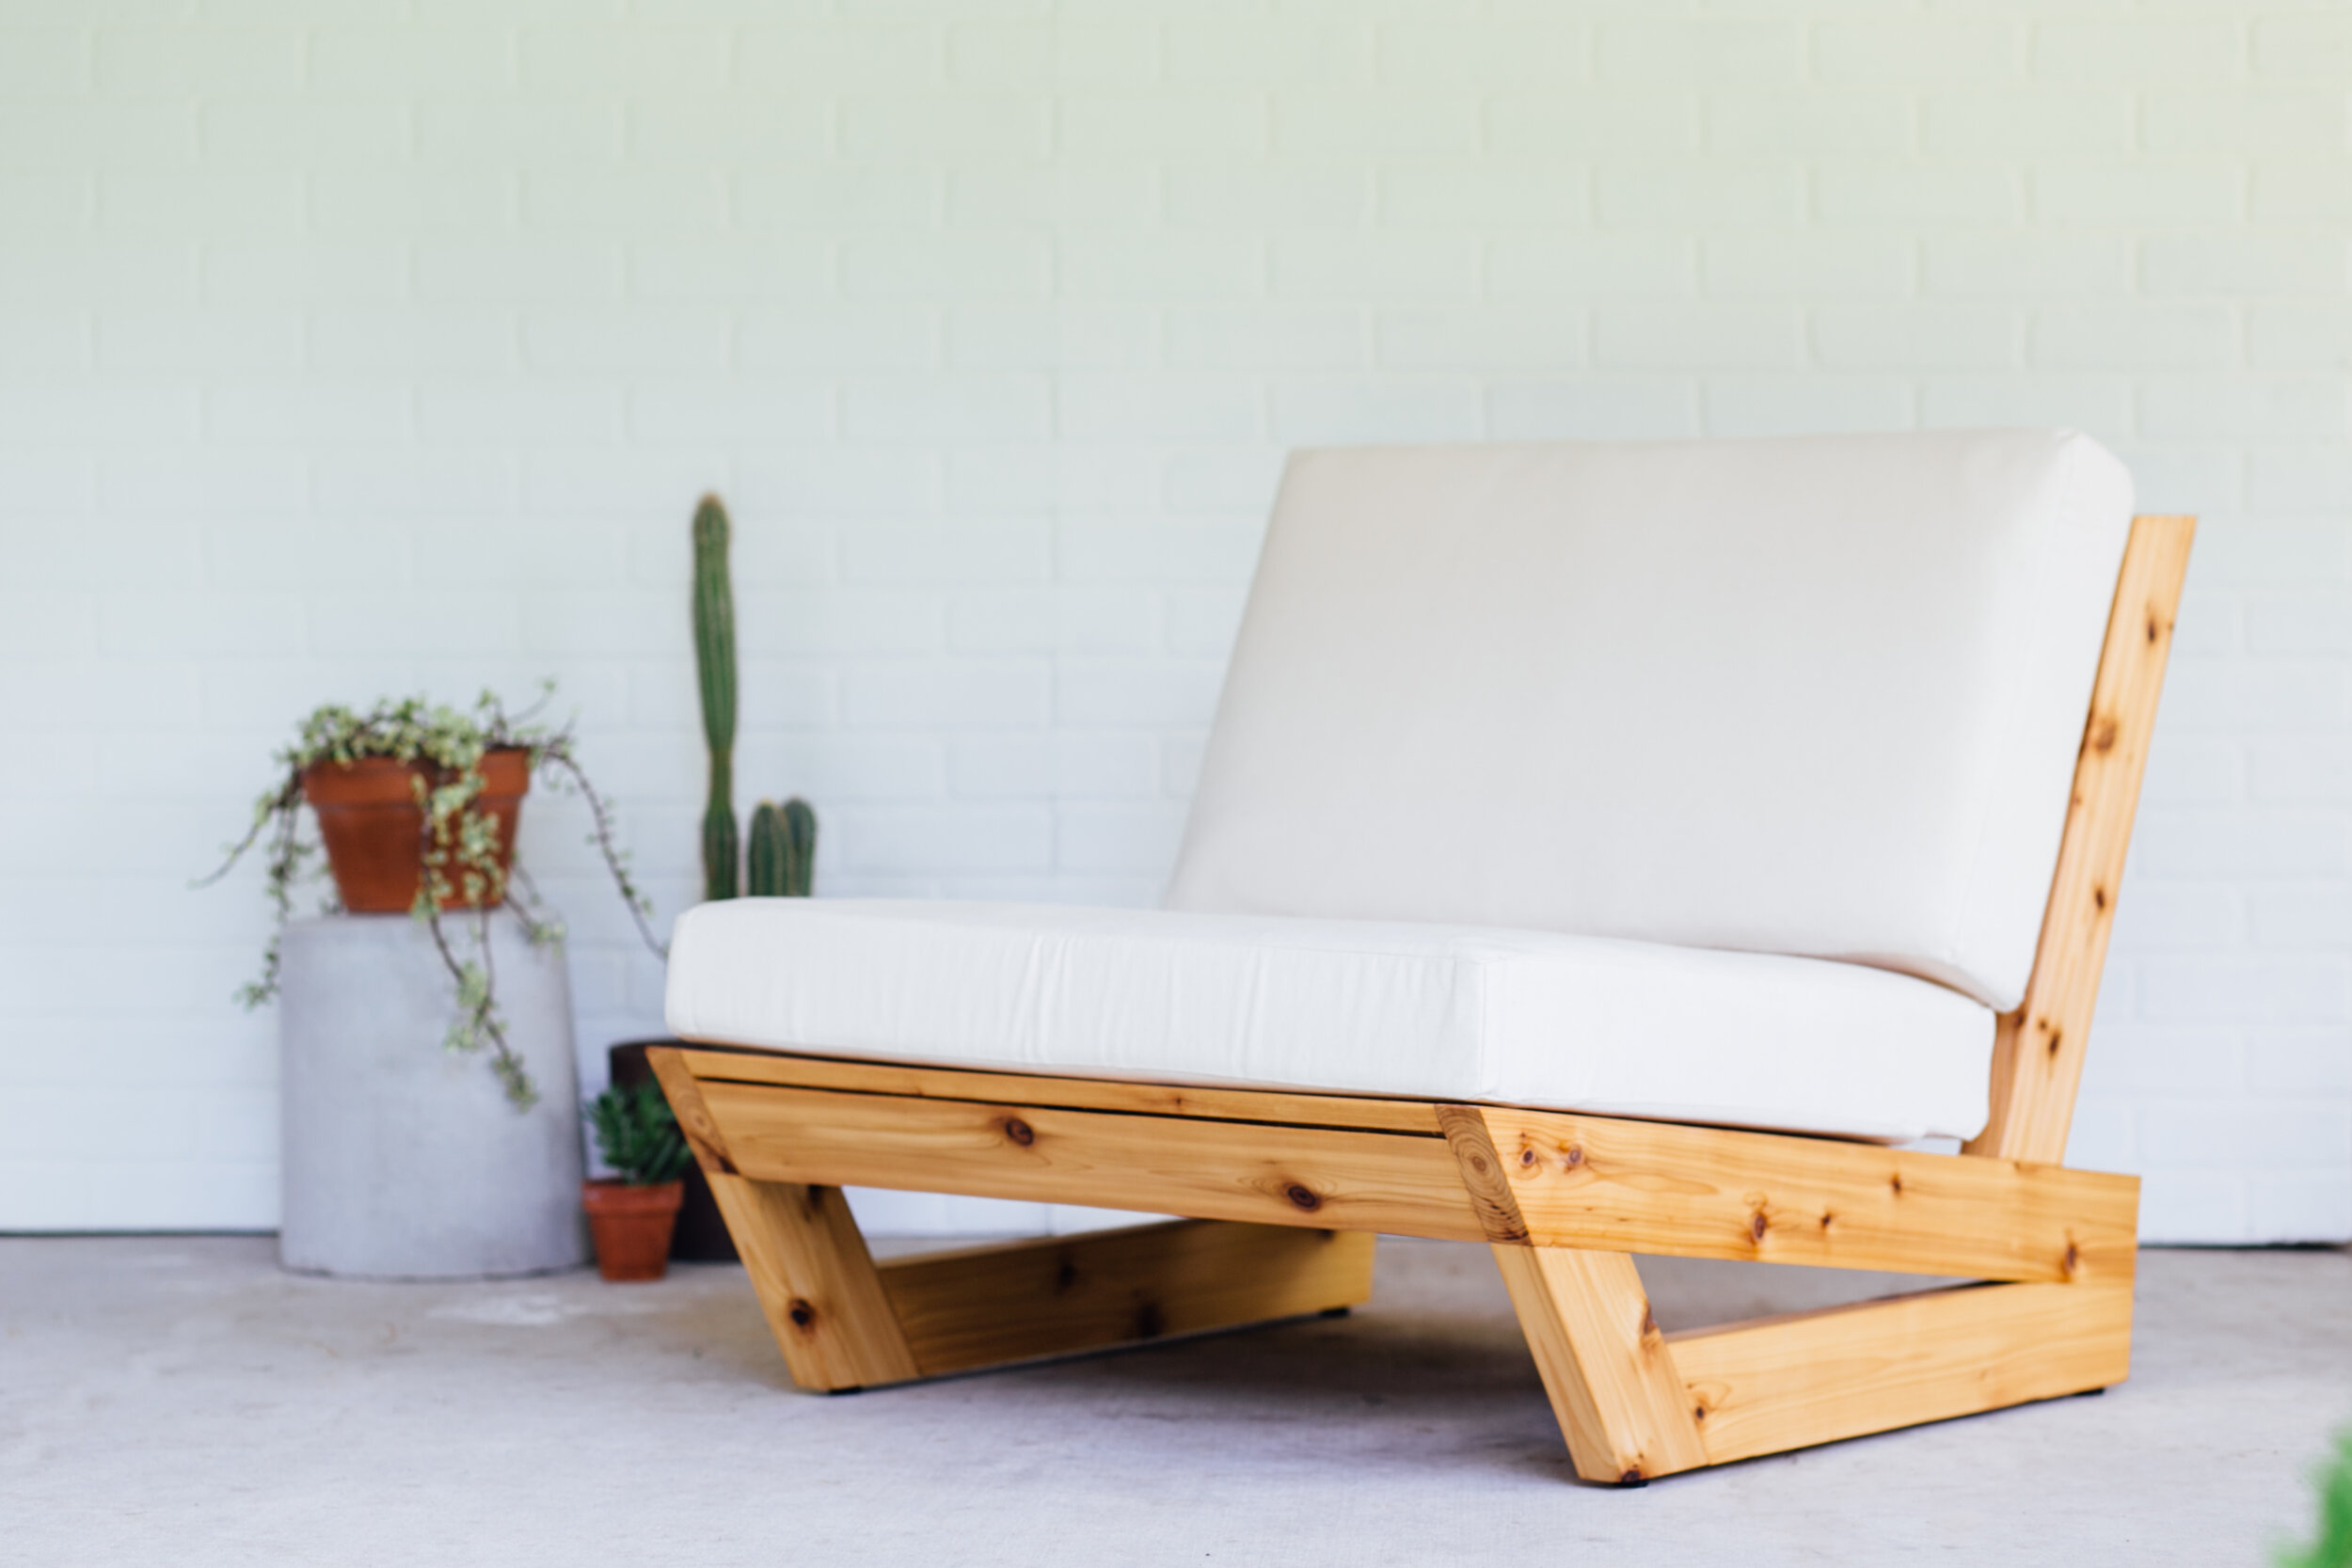 Latter Pjece Ti DIY Modern Outdoor Lounge Chair — MAKER GRAY